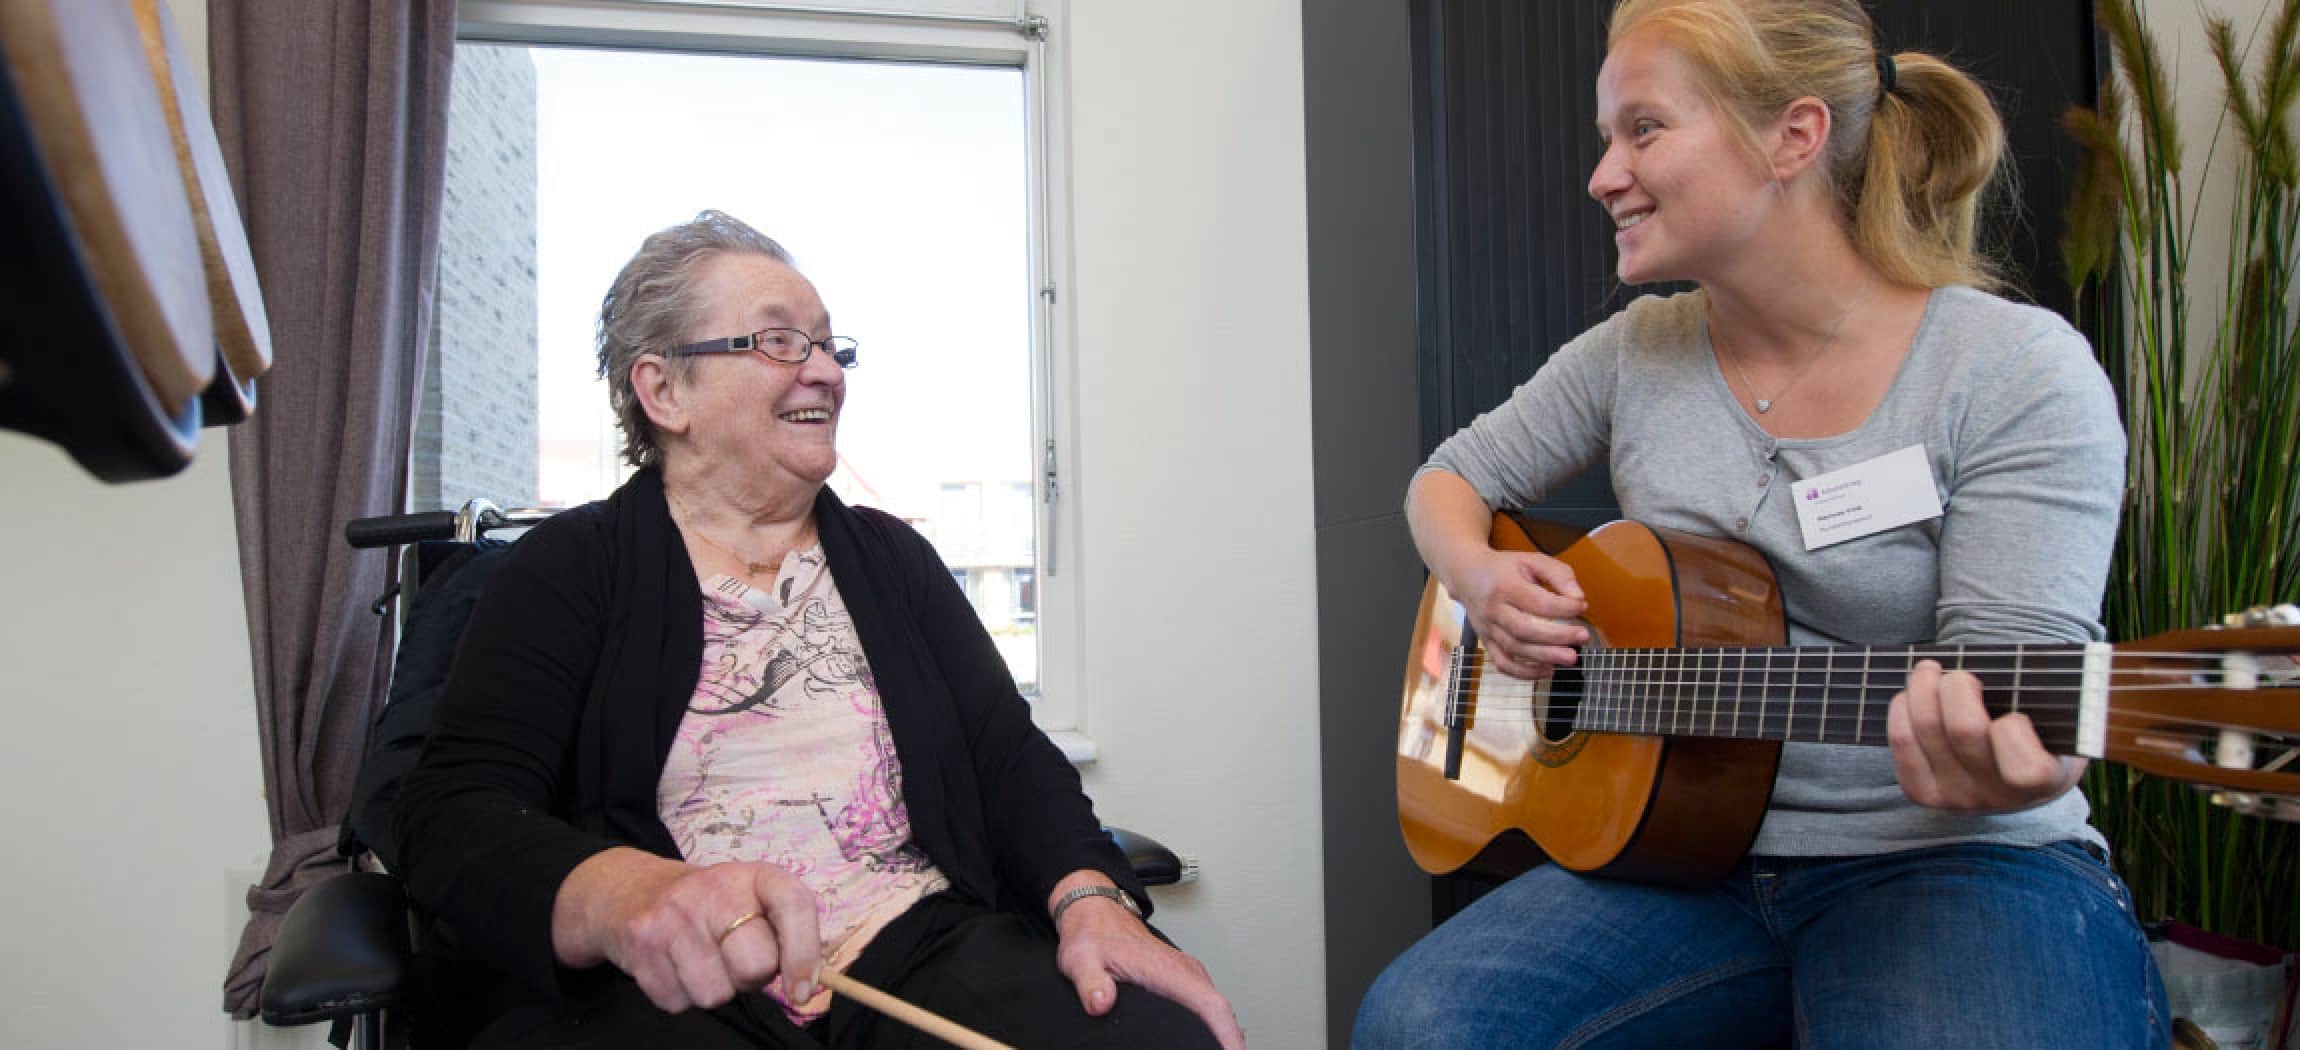 Jonge muziektherapeut met gitaar blond haar zingt voor oudere dame in rolstoel